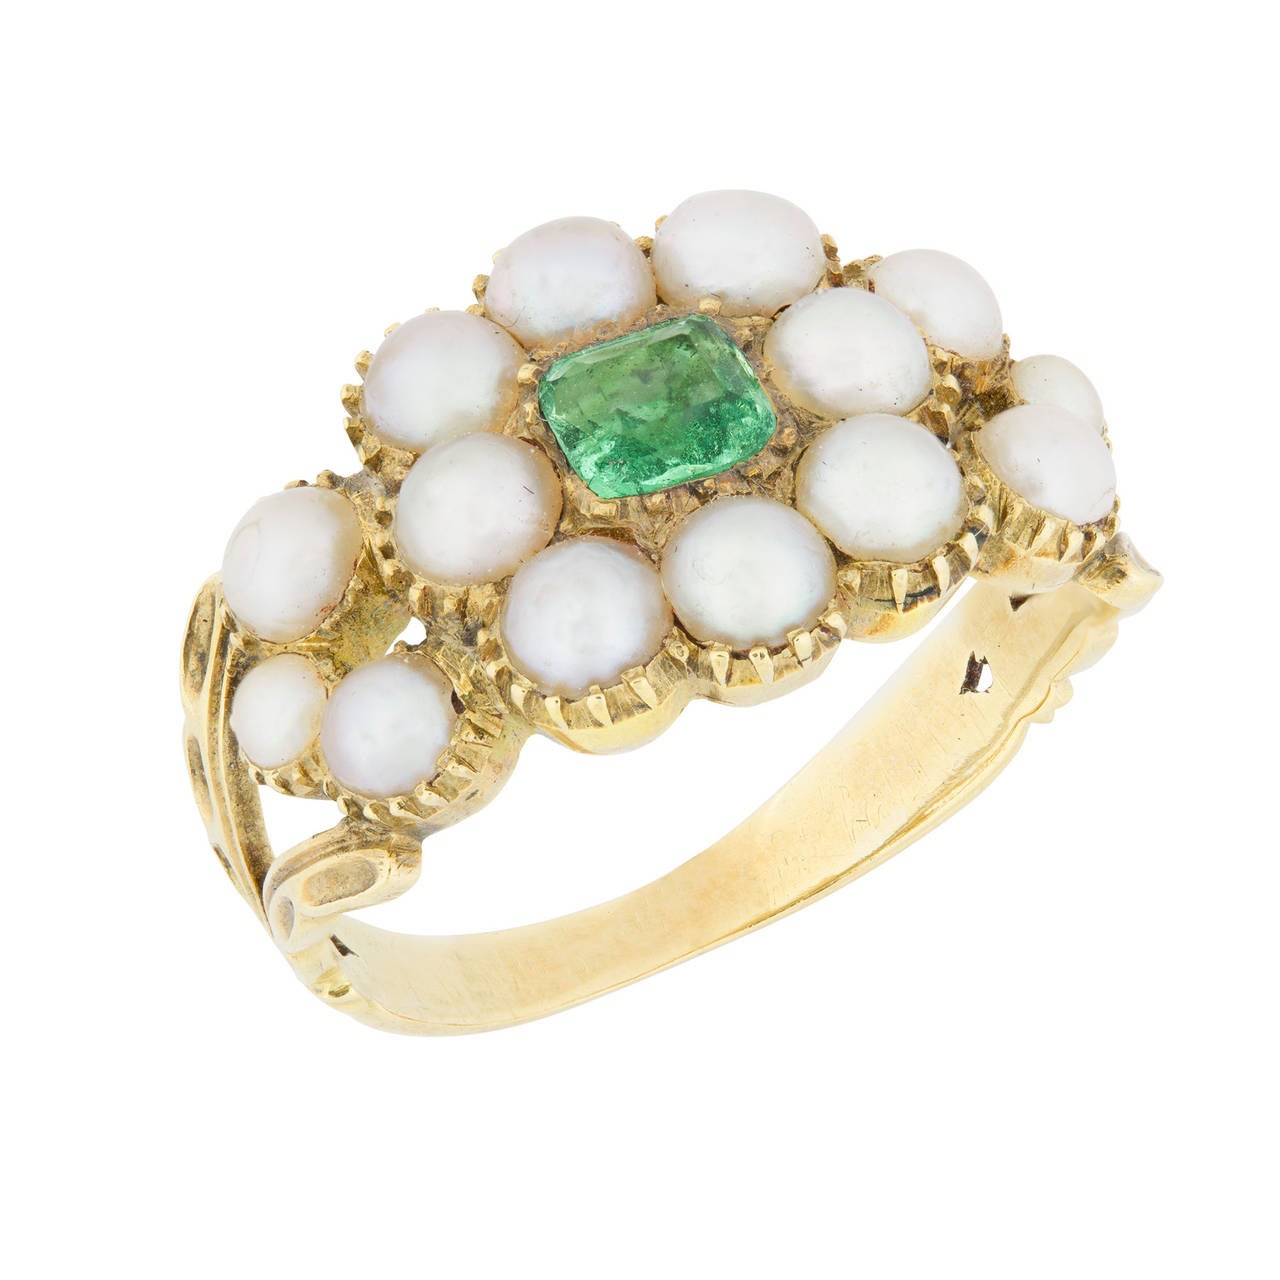 Ein Regency-Perlen- und Smaragd-Cluster-Ring, der quadratische Smaragd im Stufenschliff misst ca. 4 x 4 mm und ist in der Mitte eines Clusters aus acht natürlichen Perlen mit einem Durchmesser von ca. 3,4 mm gefasst, drei Perlen sind an jeder